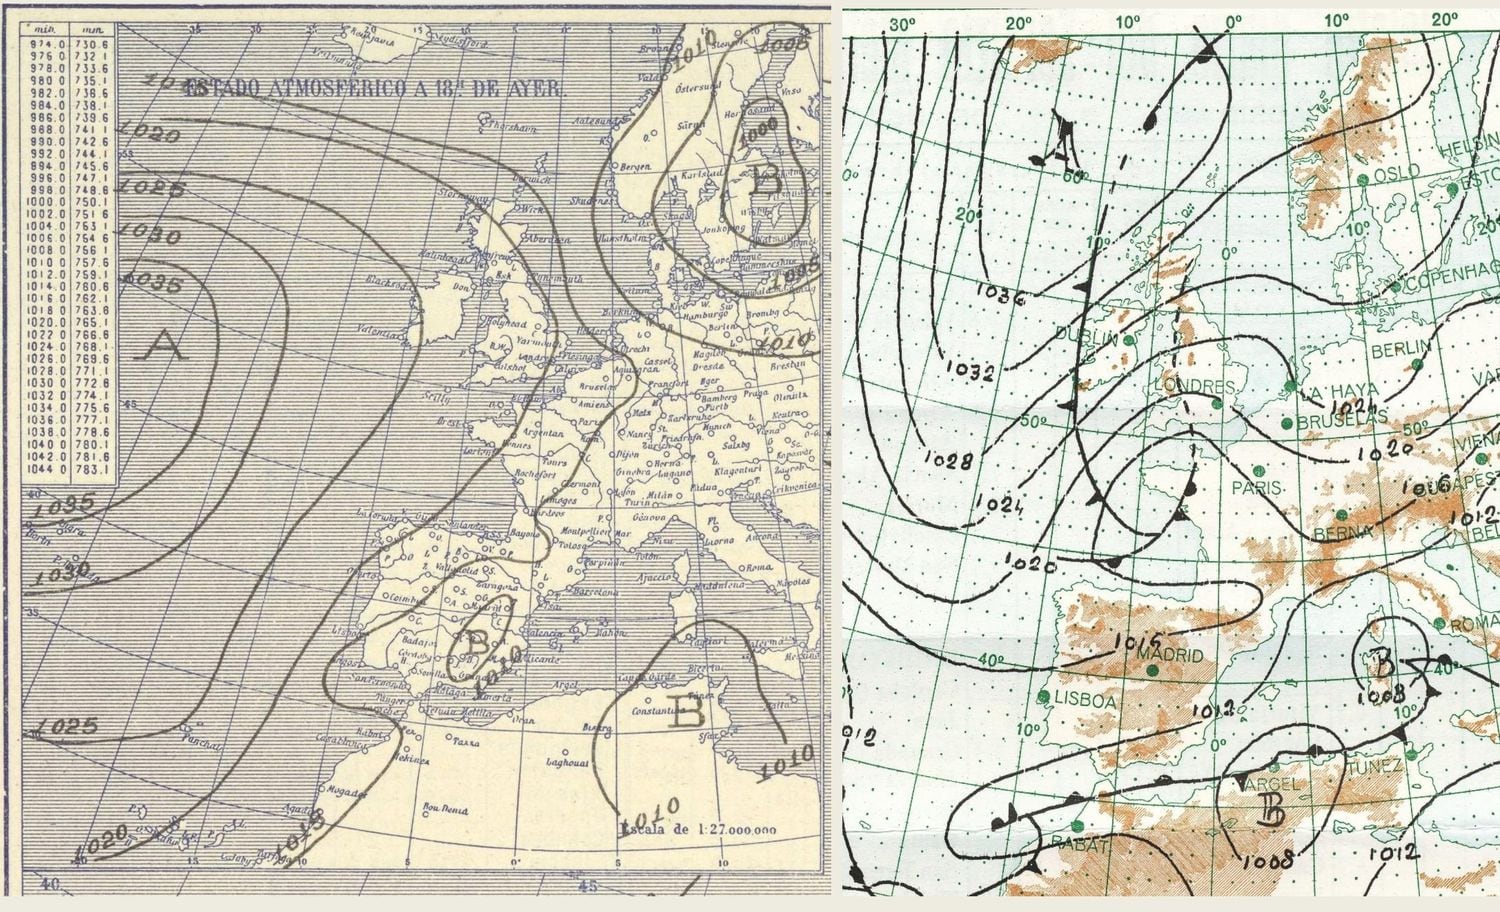 Mapas meteorológicos del 19 de julio de 1932 (izquierda) y del 24 de diciembre de 1970 (derecha), este último durante el inicio de una de las mayores olas de frío en España. Con la salvedad de que uno es estival y el otro invernal, muestran una disposición atmosférica similar de advección de aire muy frío hacia España.